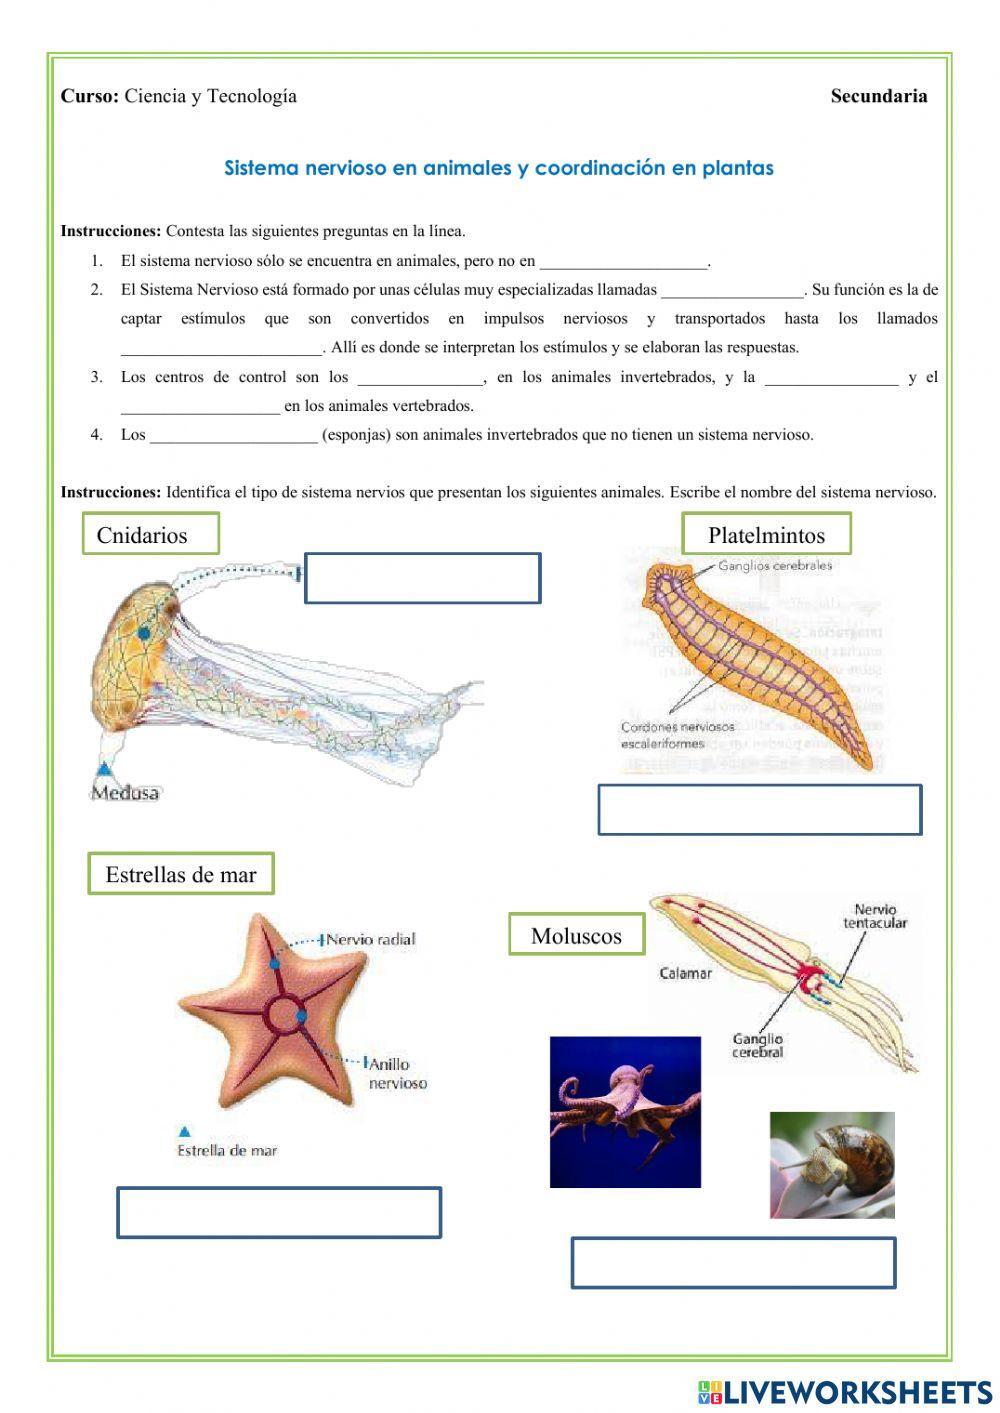 Sistema nervioso en animales y coordinación vegetal